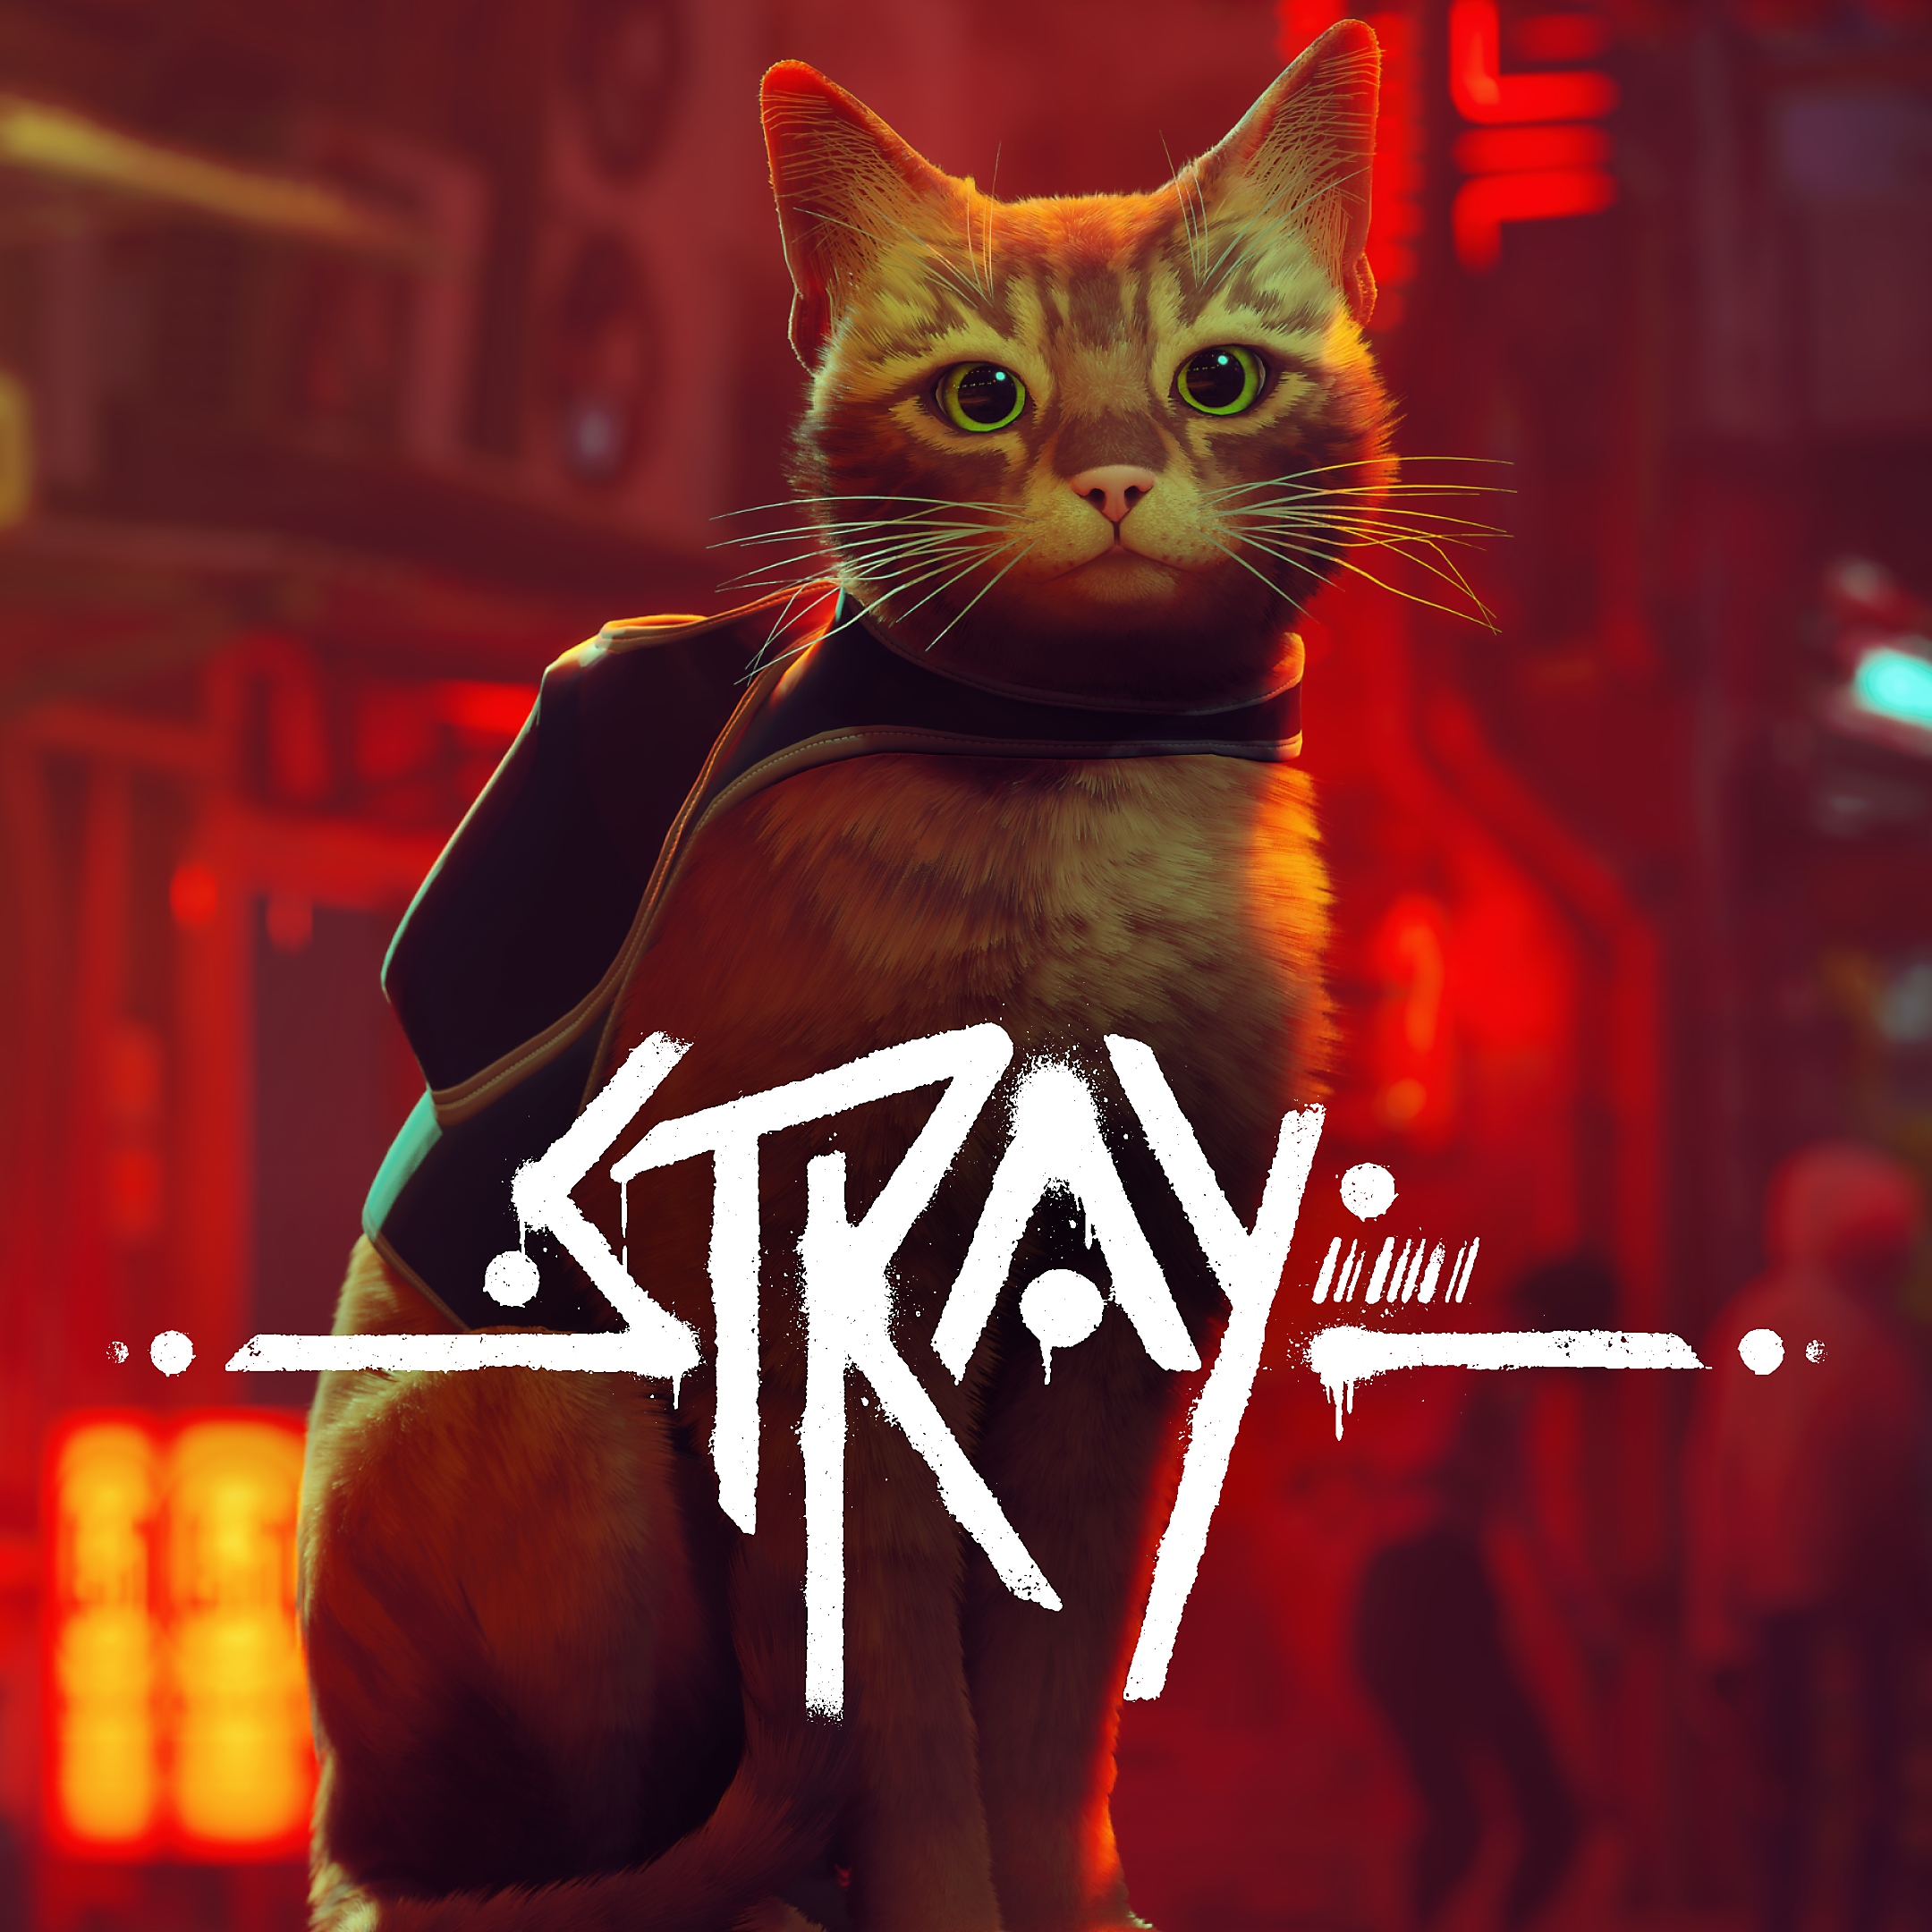 Arte de Stray mostrando un gato anaranjado